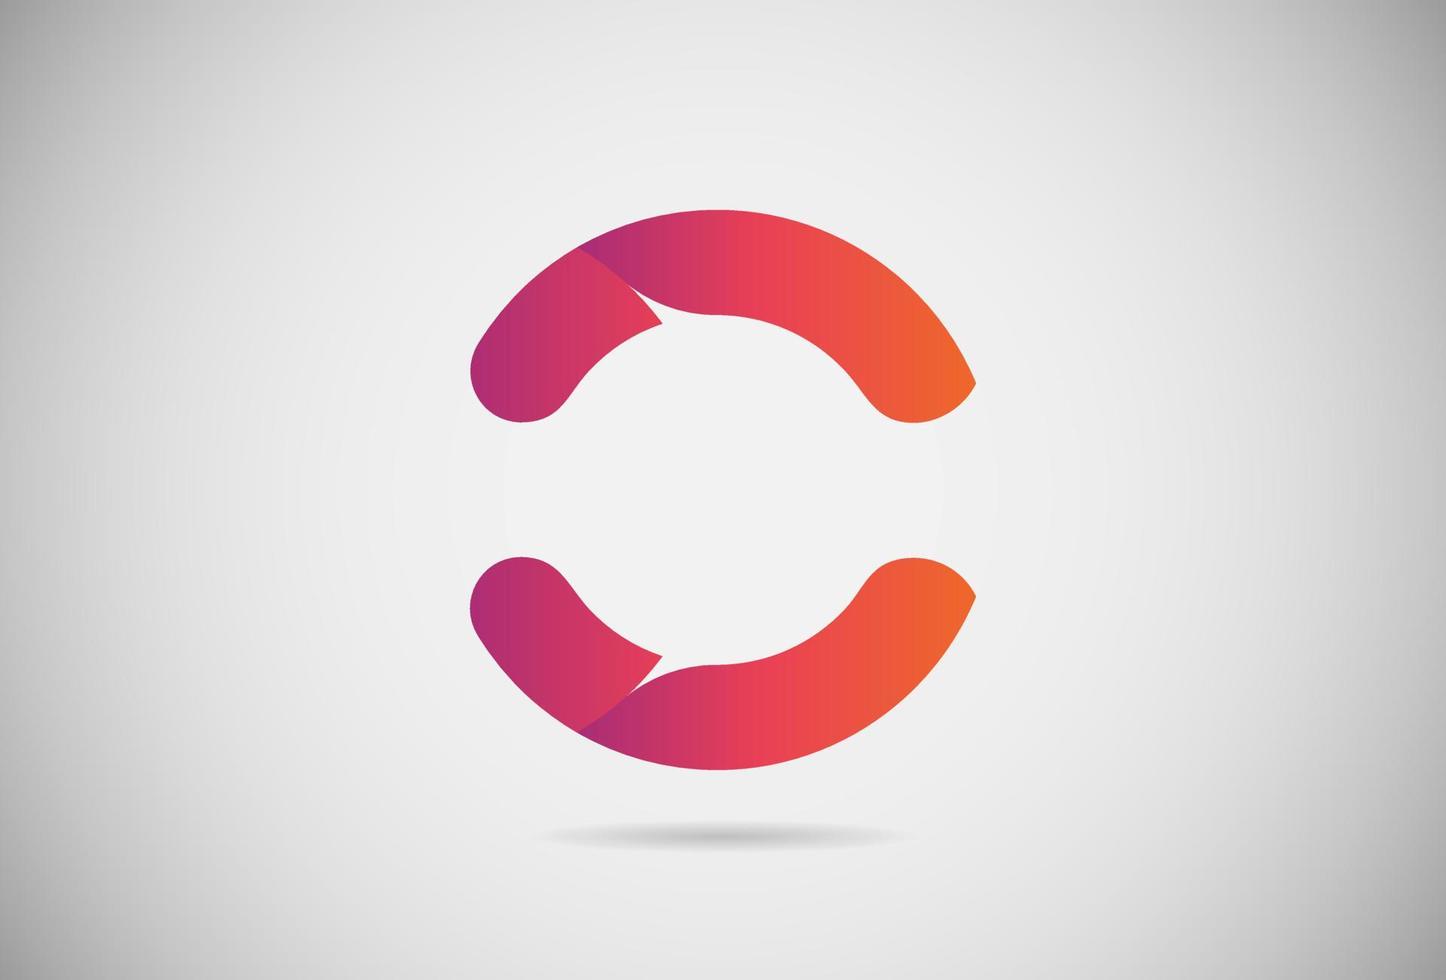 letra c logo degradado simple elegante diseño plano. vector de logotipo creativo para empresa o evento. fuente abstracta y logotipo moderno del alfabeto. logotipo degradado rosa púrpura y naranja.